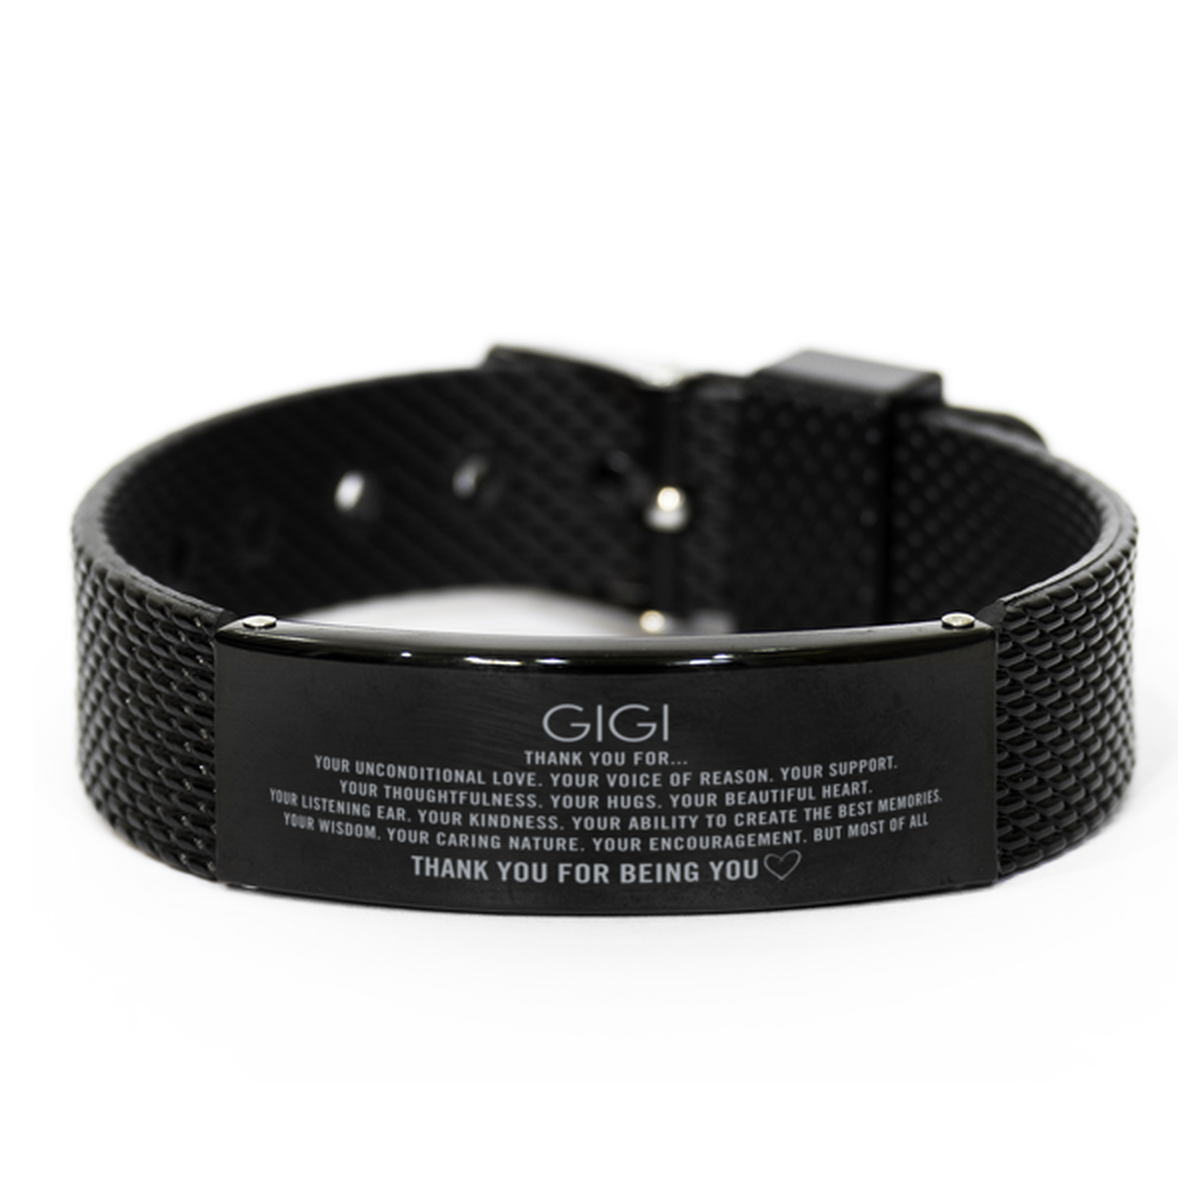 Gigi Black Shark Mesh Bracelet Custom, Engraved Gifts For Gigi Christmas Graduation Birthday Gifts for Men Women Gigi Thank you for Your unconditional love